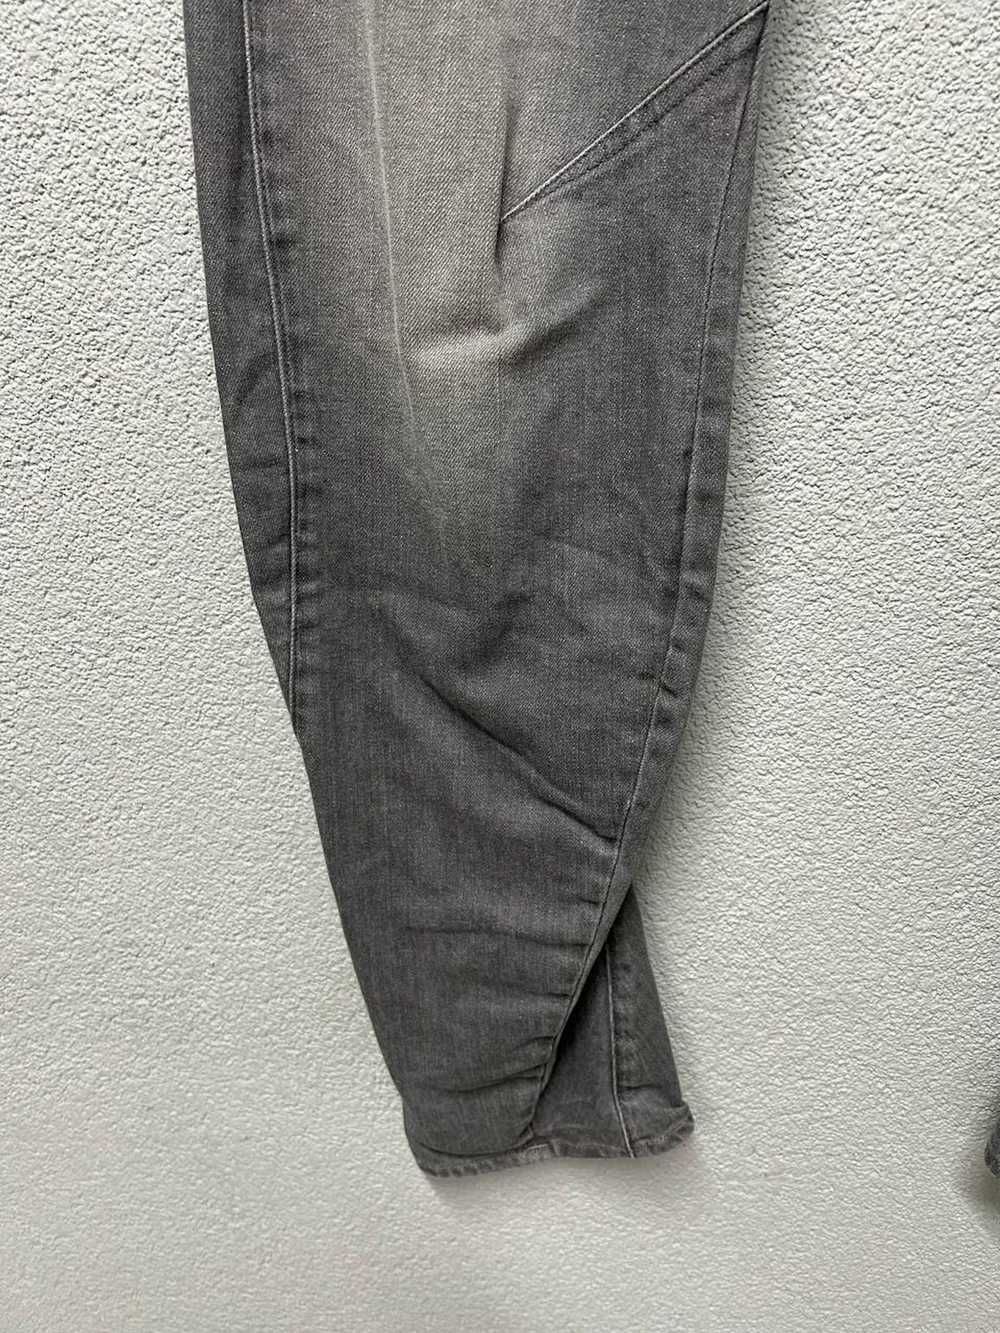 Gstar G Star Raw ARC 3d jeans mens W 30 L 34 - image 5